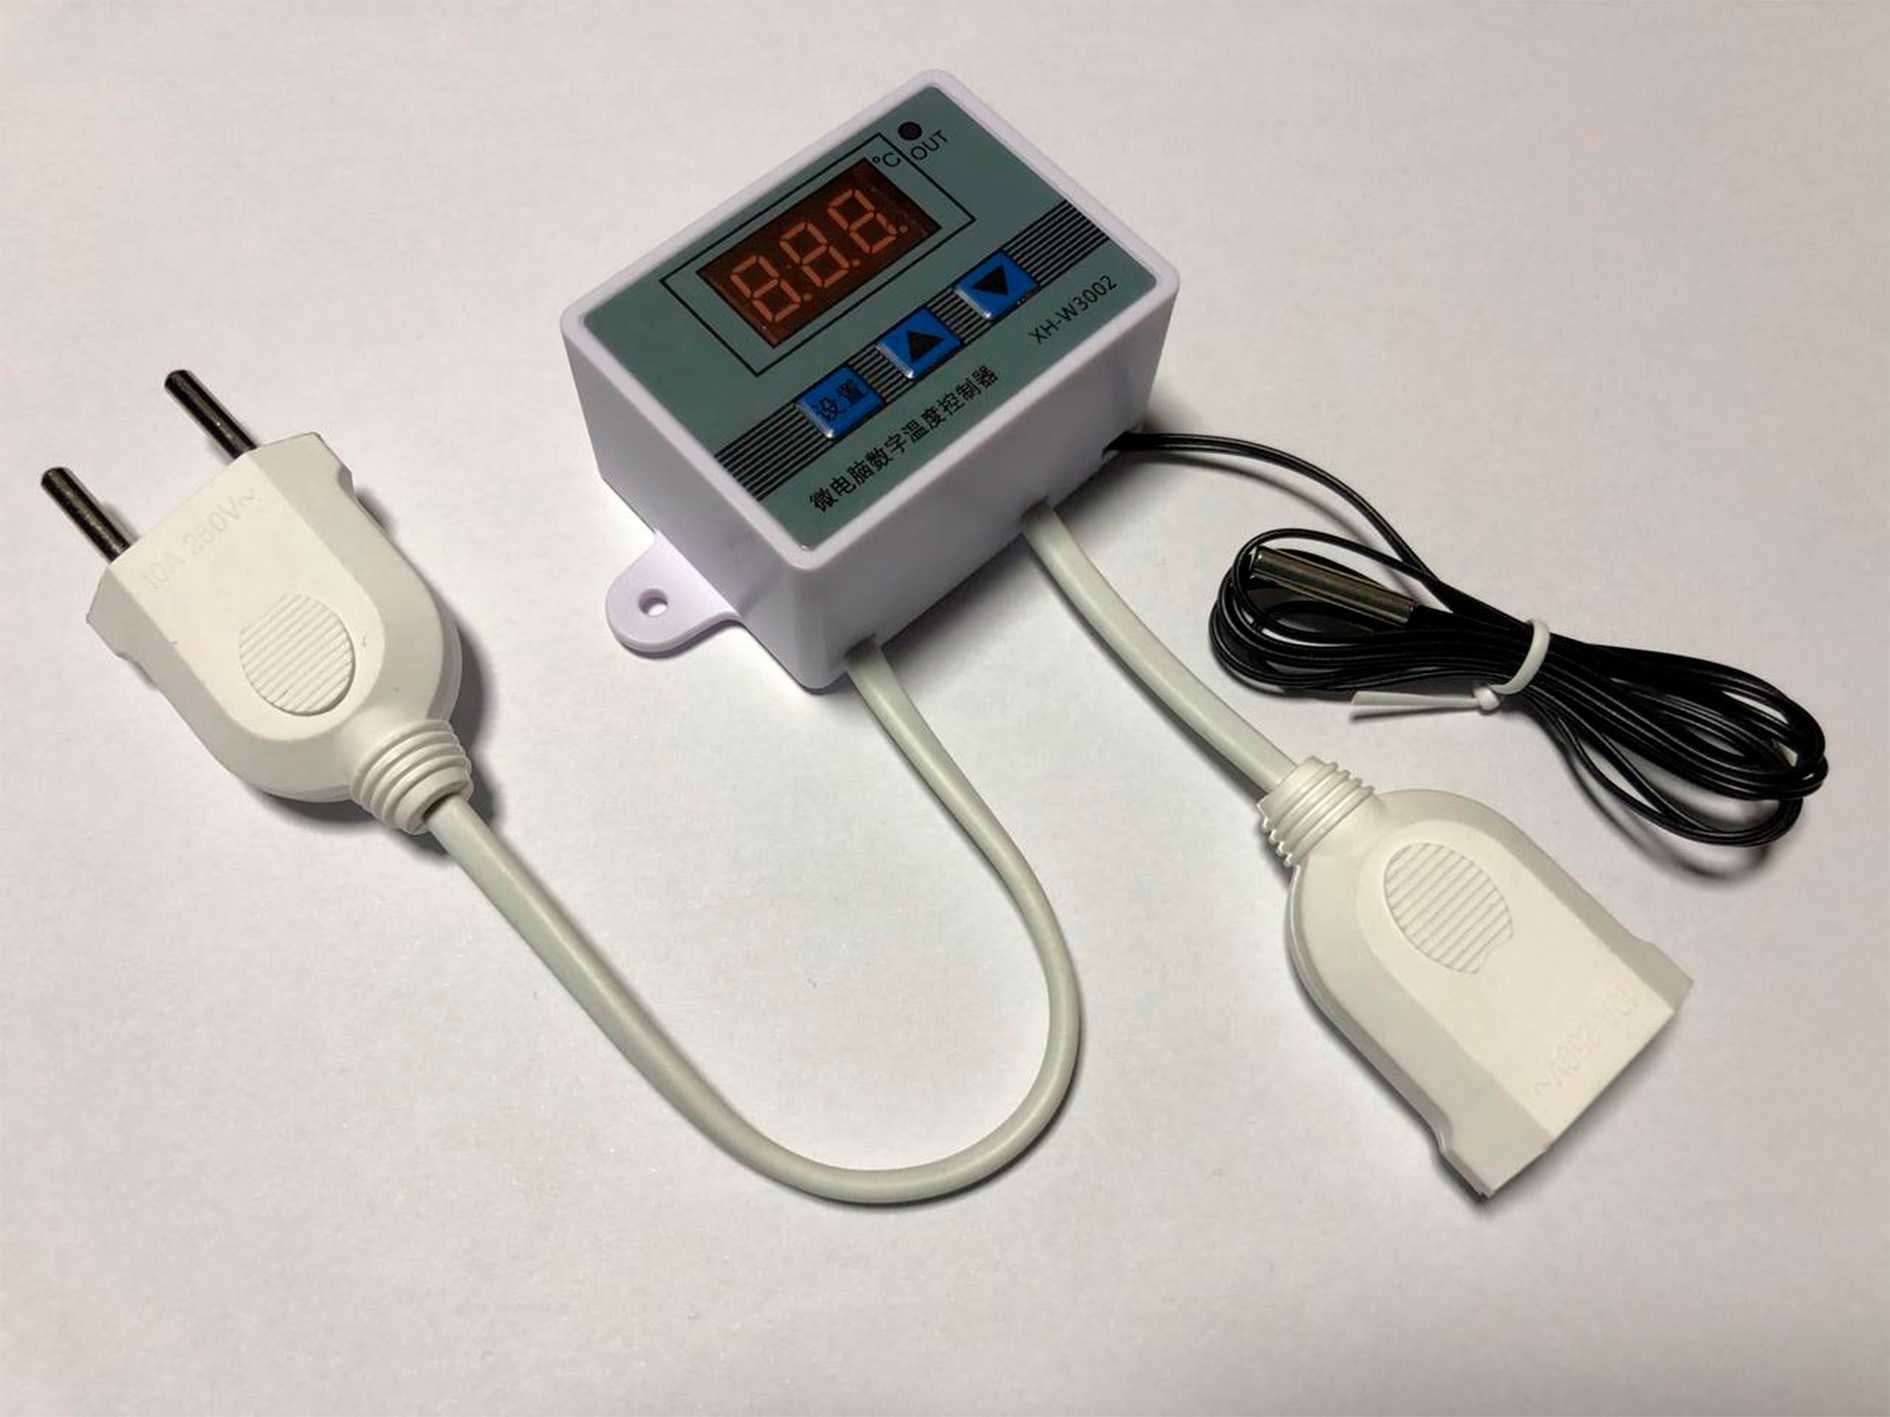 Терморегулятор термостат XH-W3002 220В накладной с дисплеем. Качество